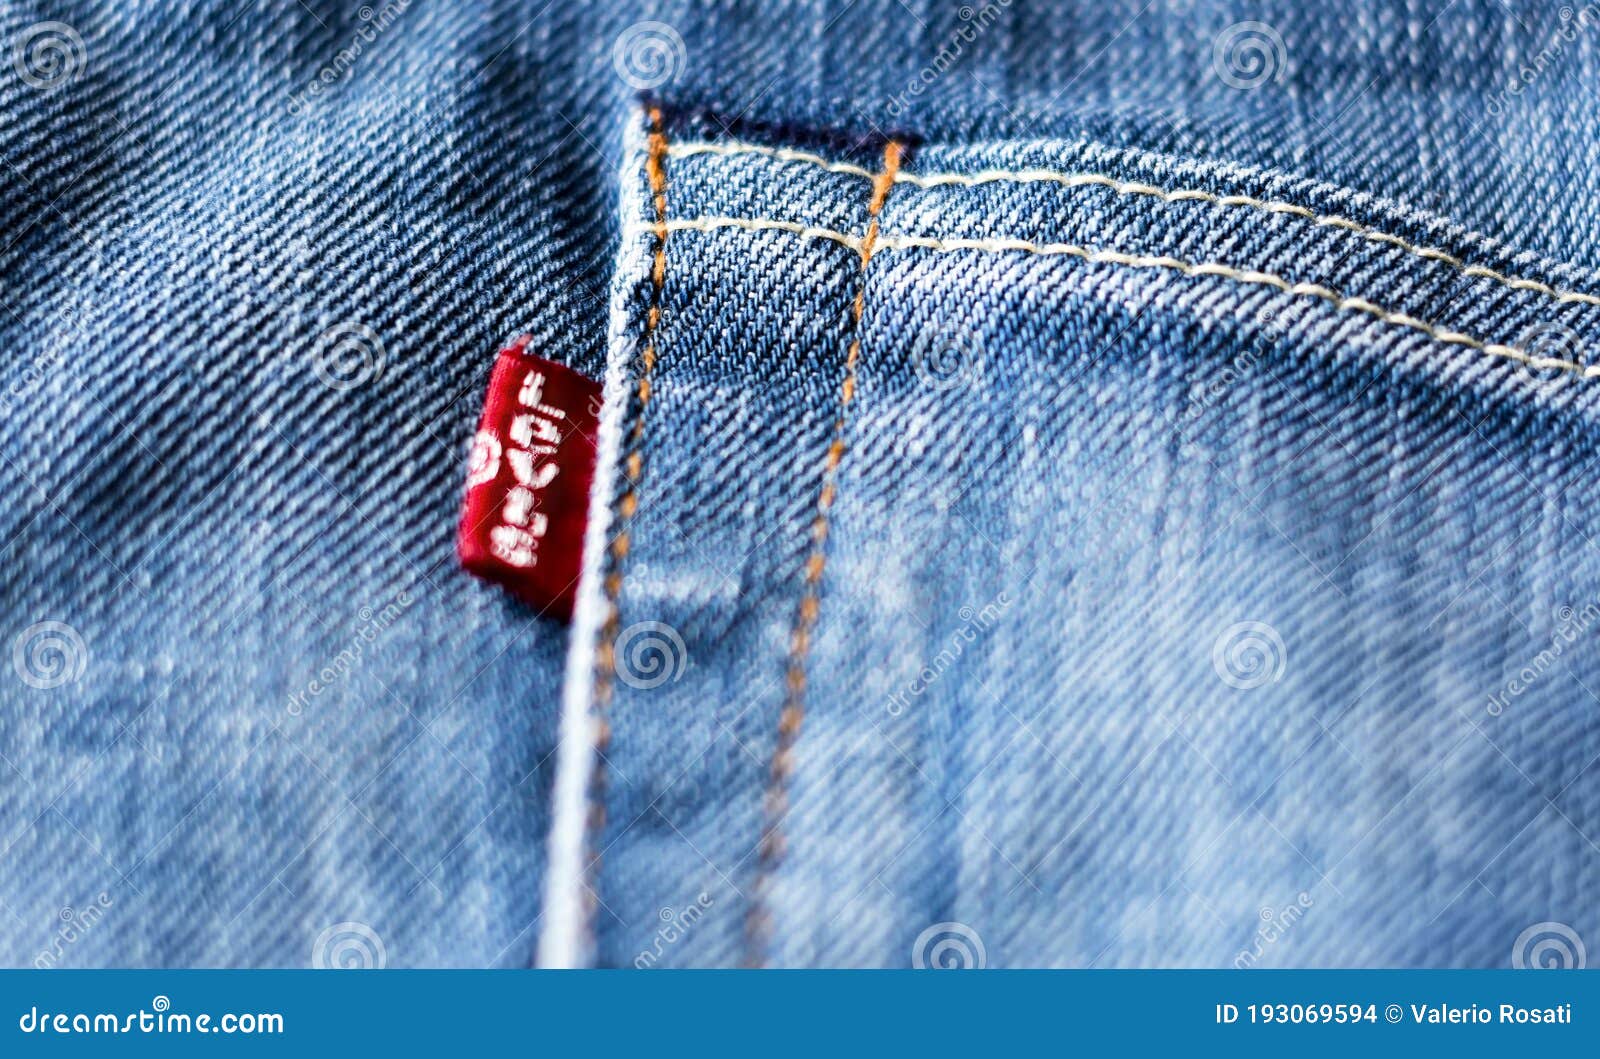 La Etiqueta Roja De Levis En El Bolsillo Trasero De Un Par De Jeans Imagen  de archivo editorial - Imagen de levi, primer: 193069594